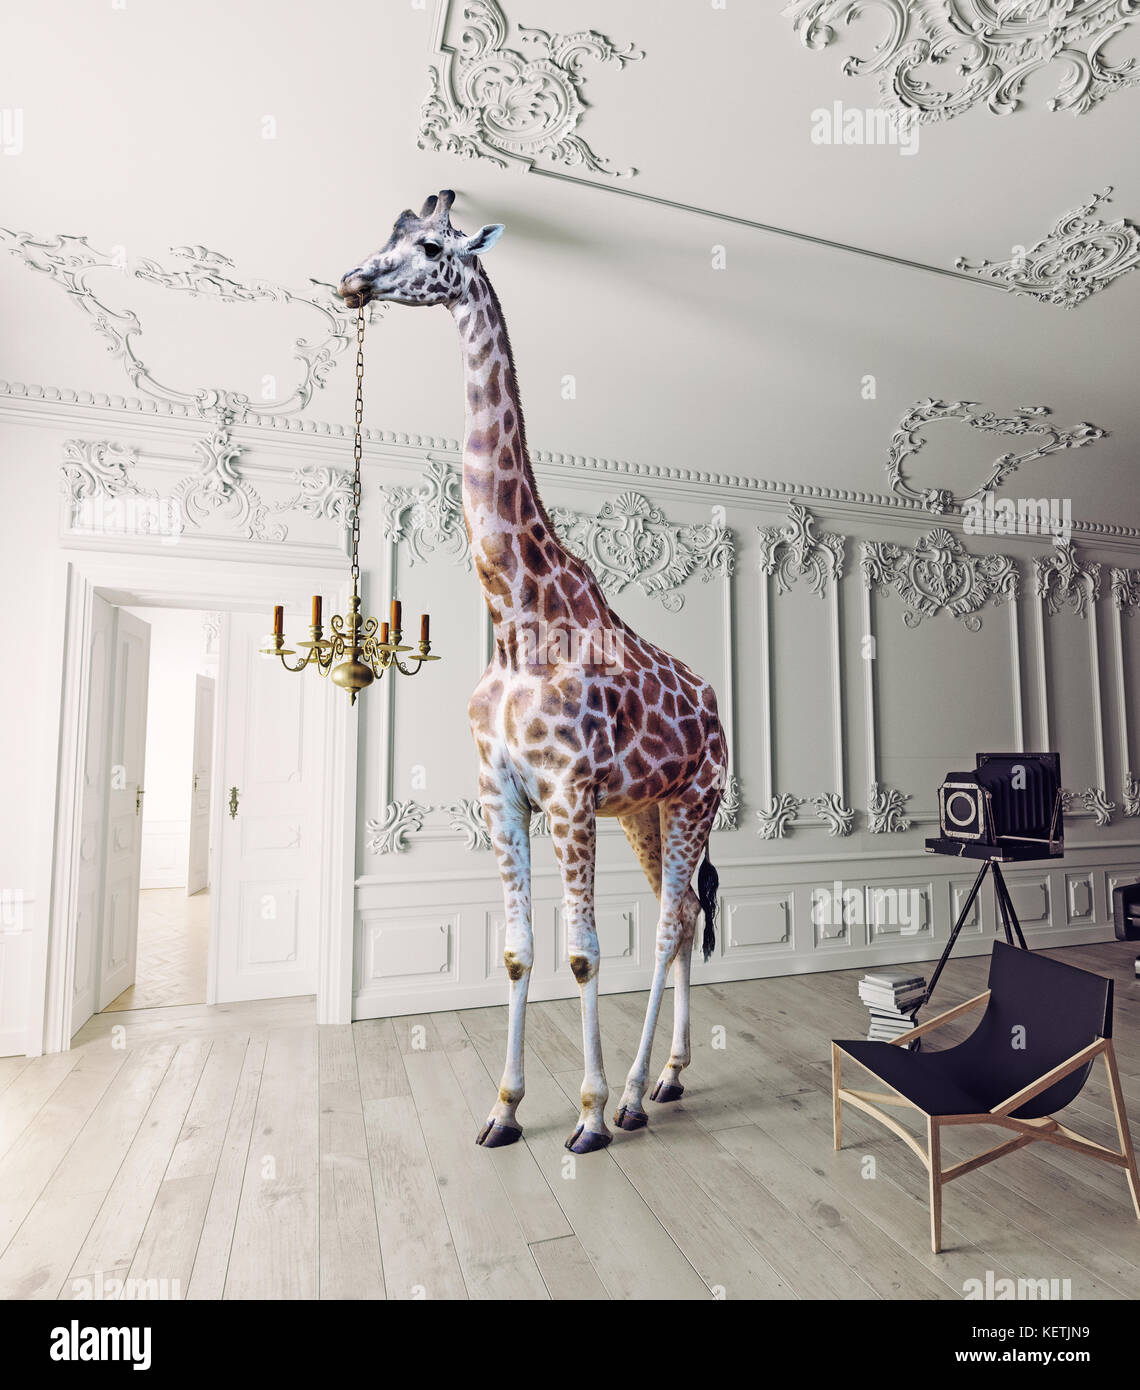 La giraffa tenere il lampadario nel lusso interni decorati Foto Stock